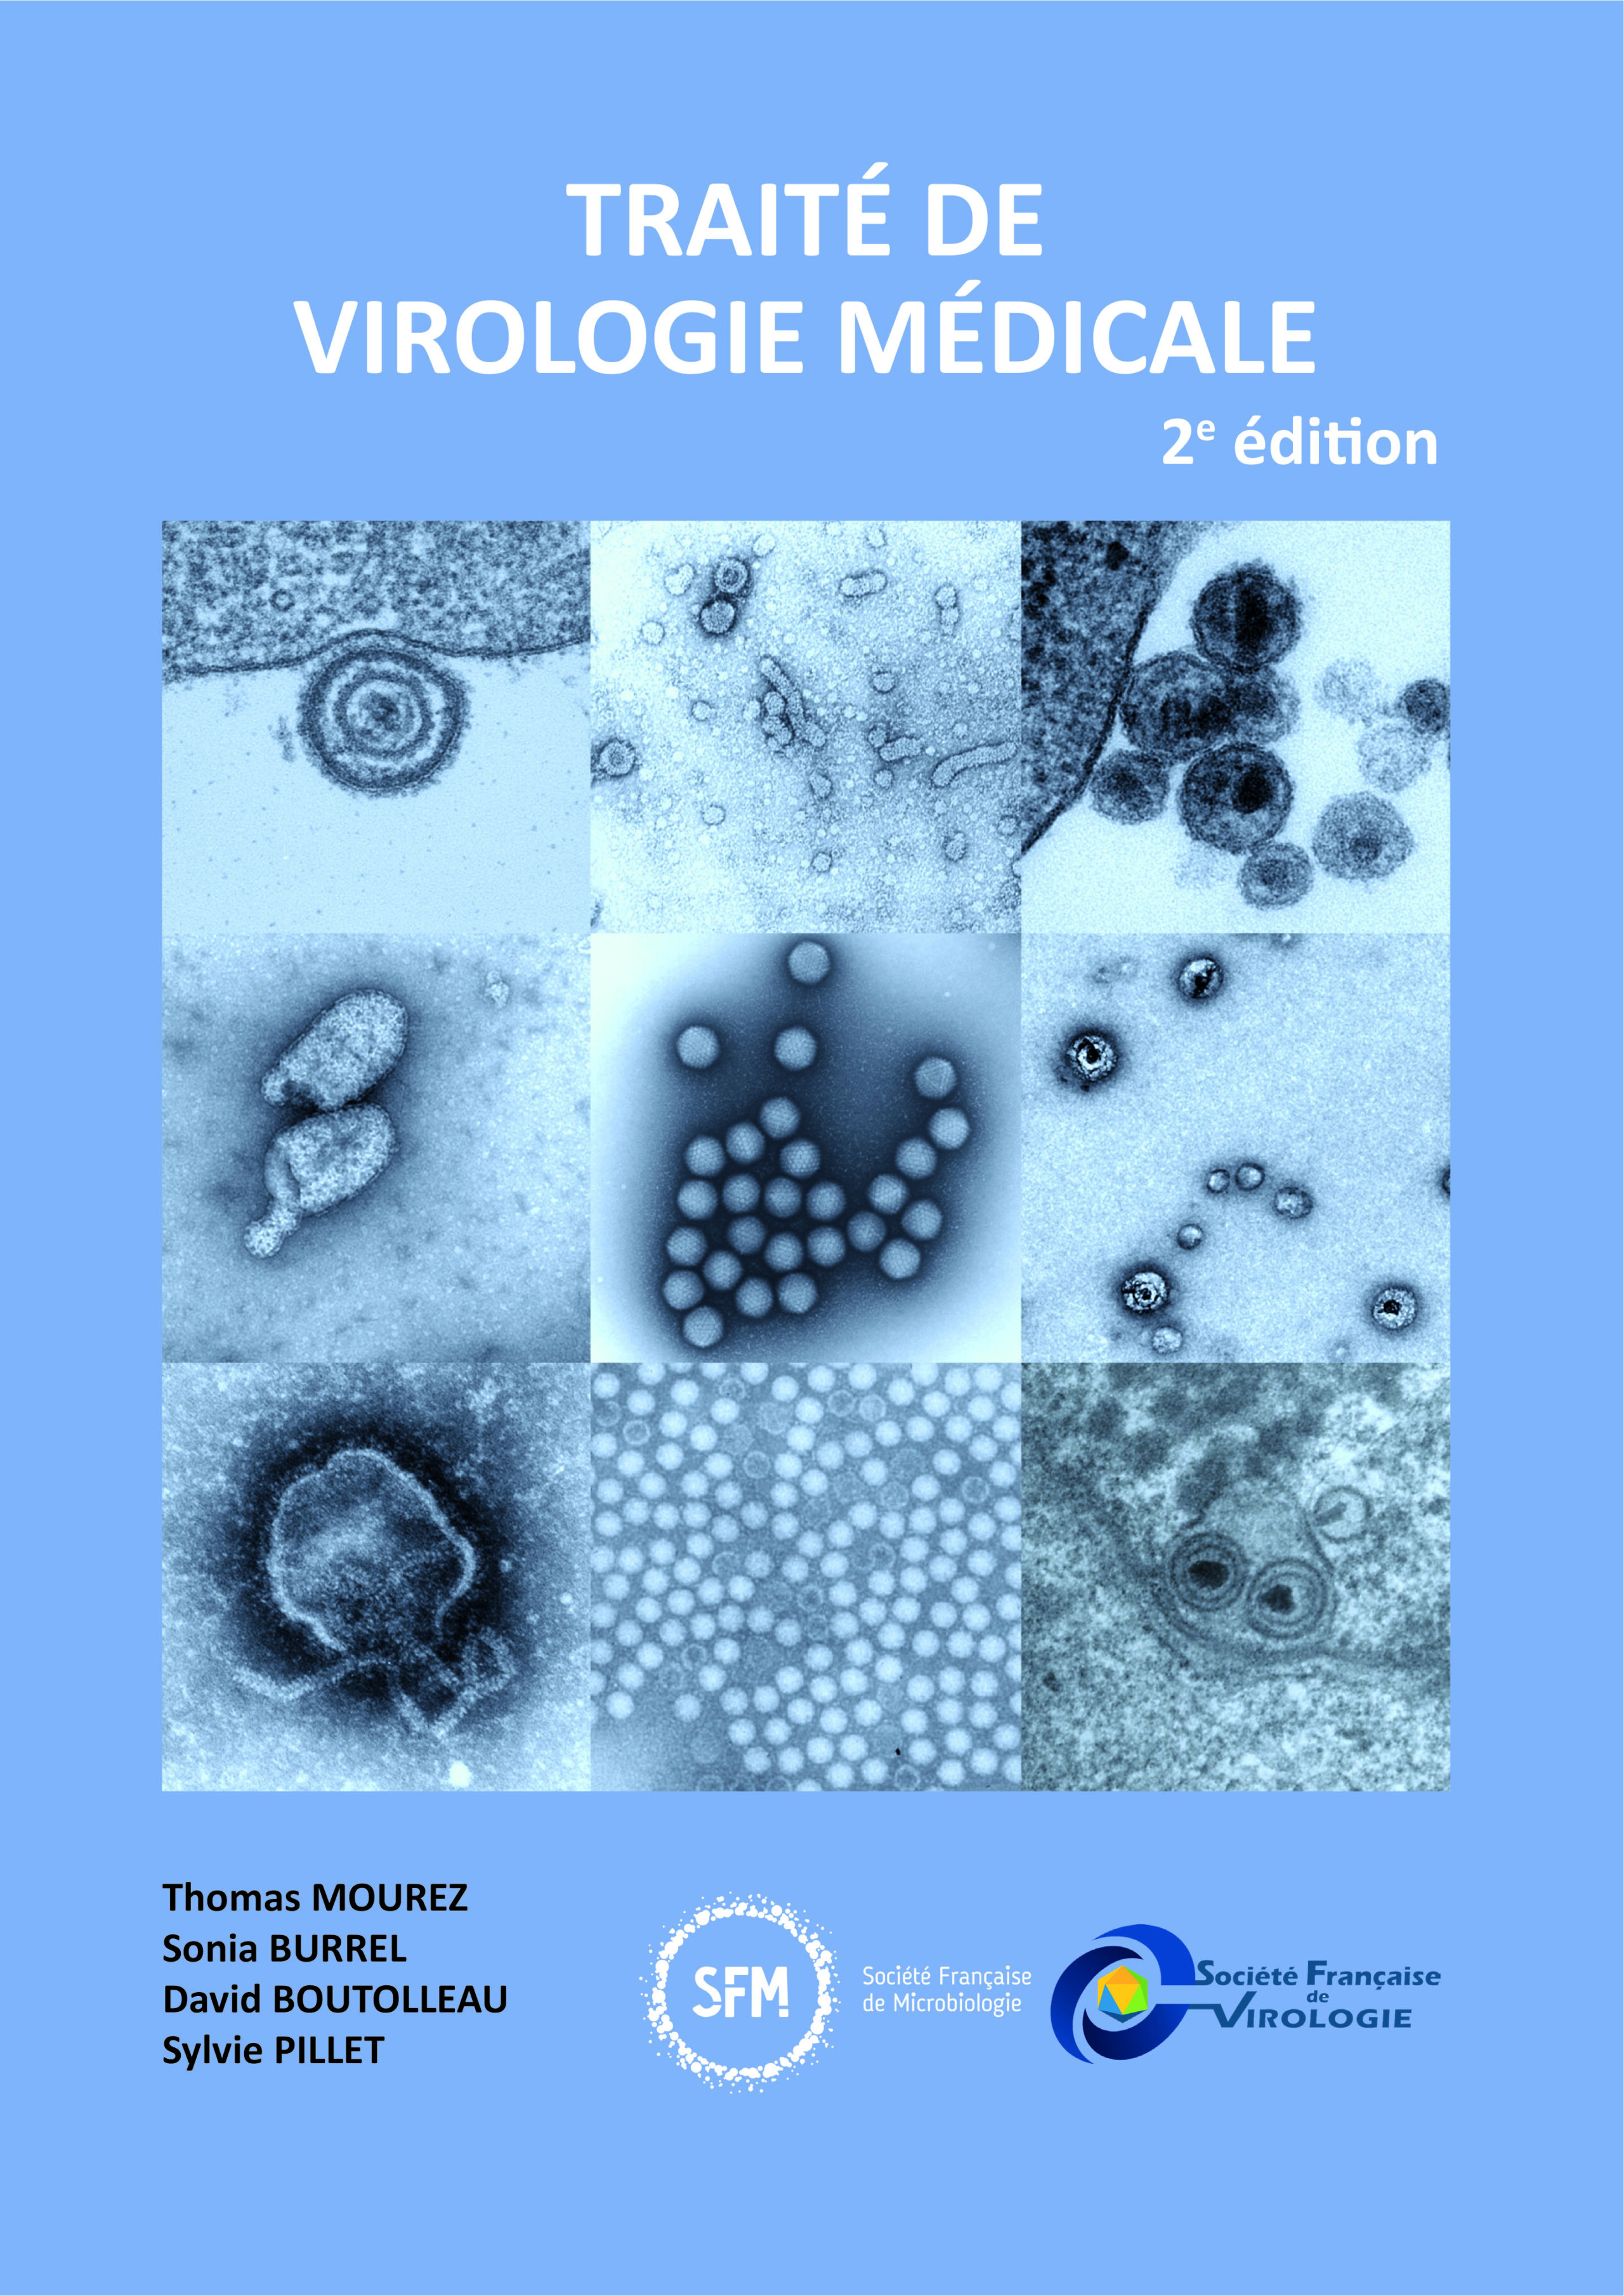 Traité de virologie médicale - Page 3 TVM2019_COUVERTURE